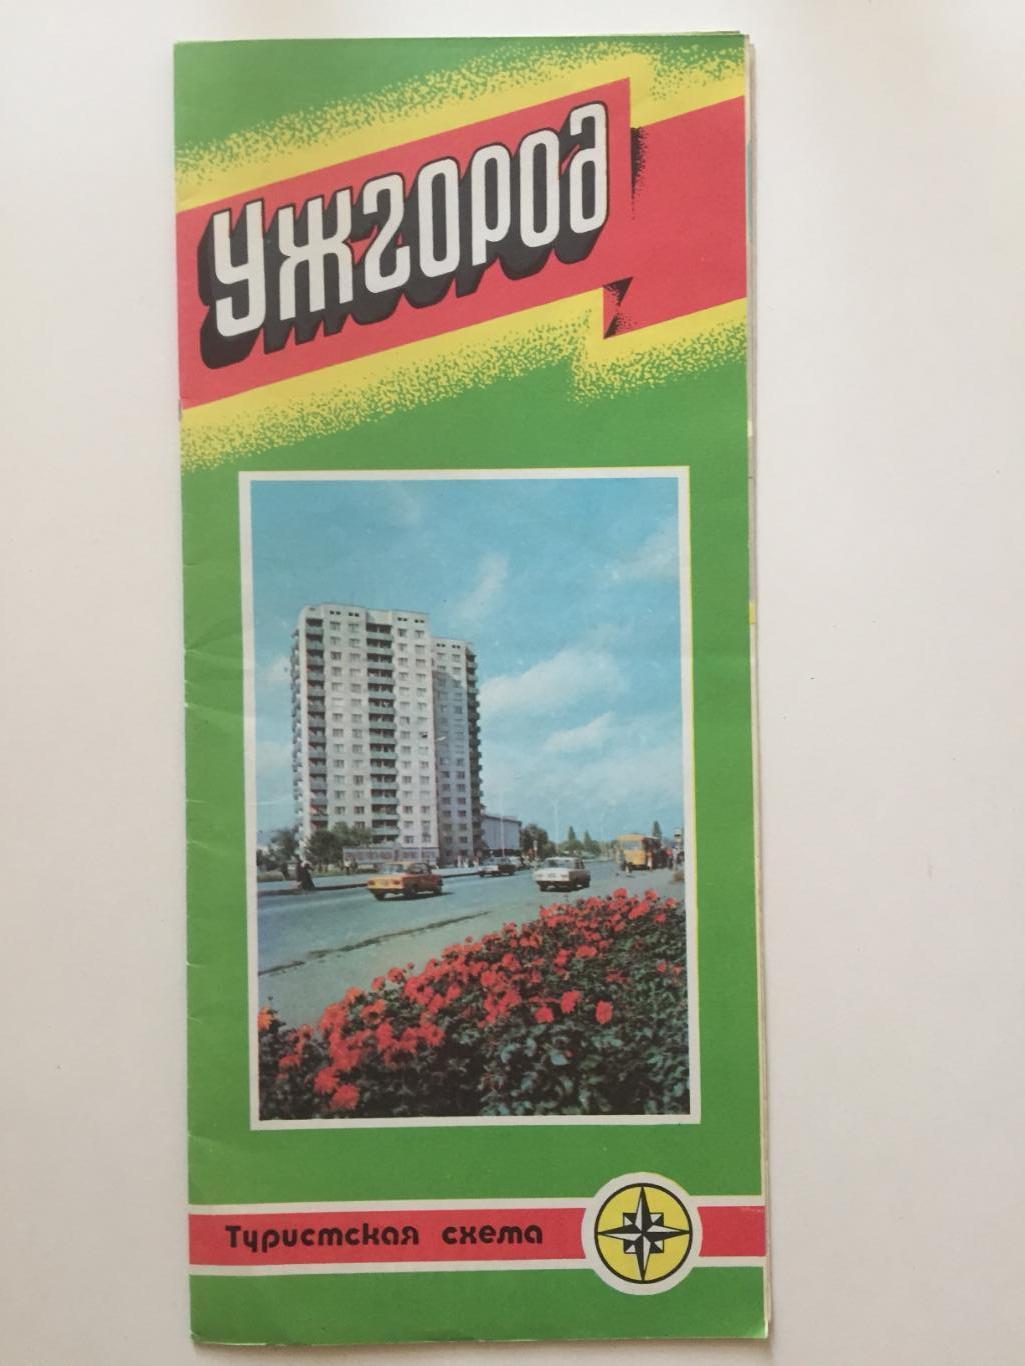 Туристская схема Ужгород 1986